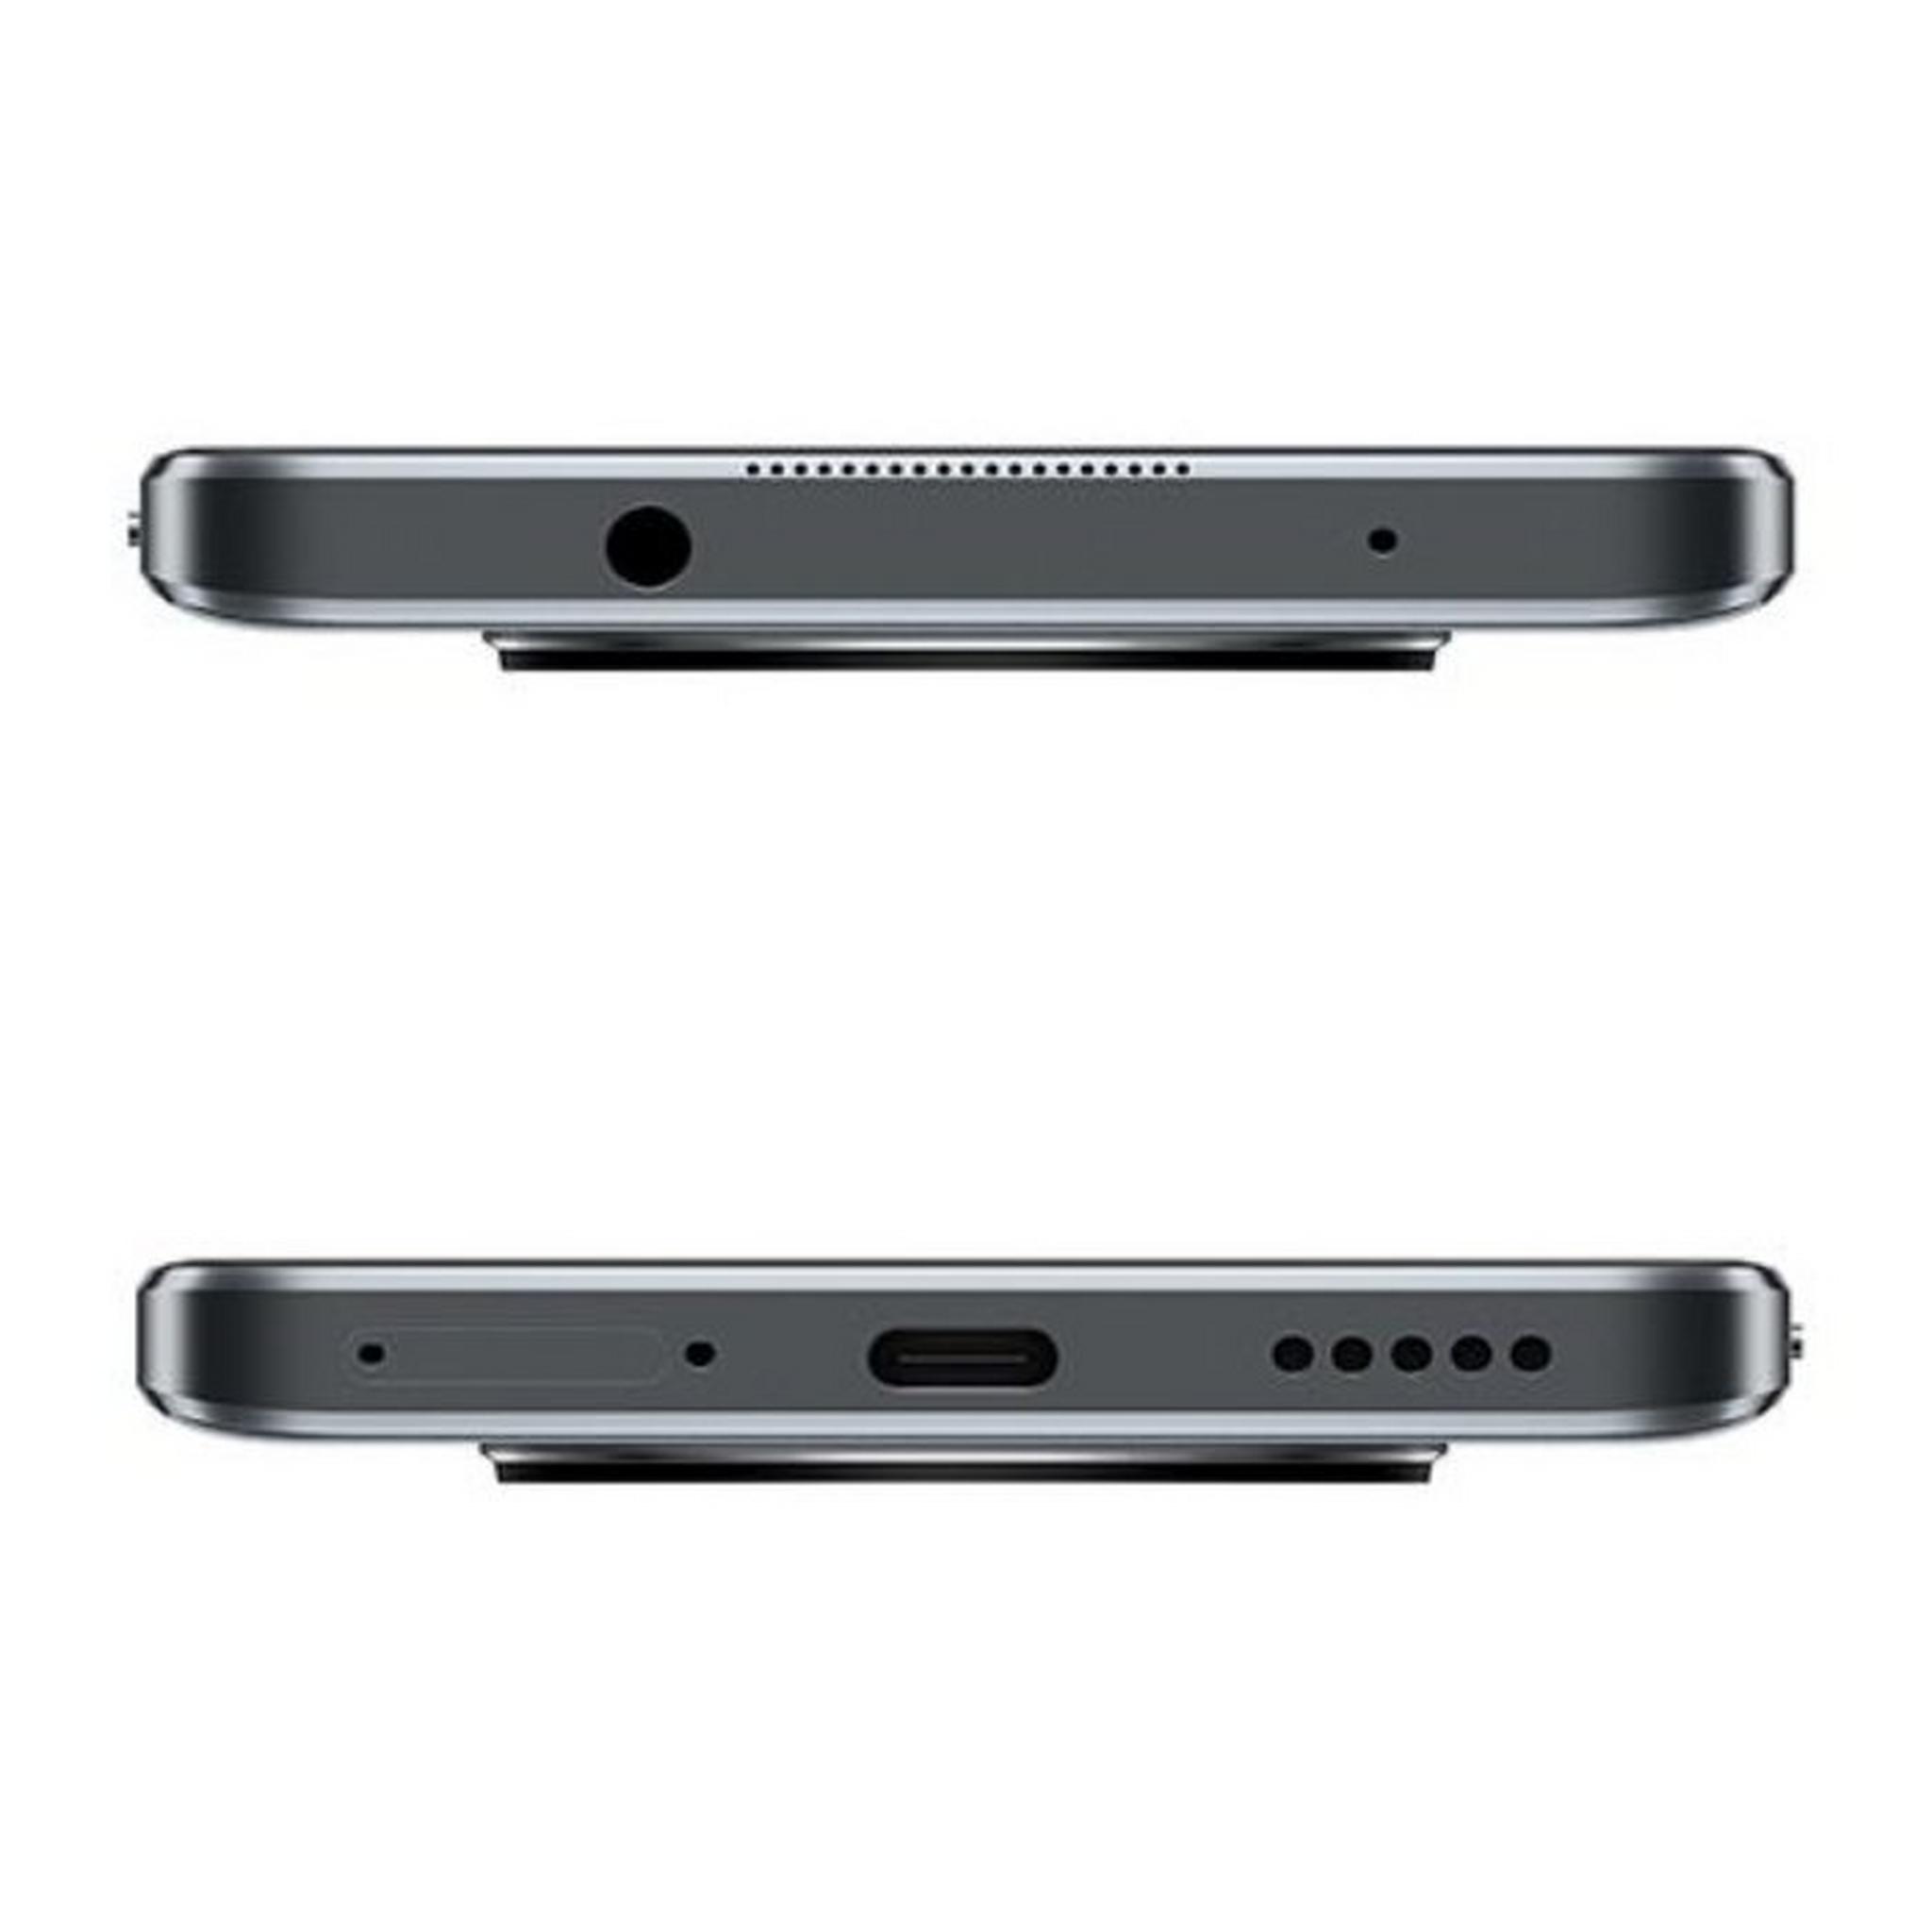 Huawei Nova Y90 128GB, 8GB RAM Phone - Black